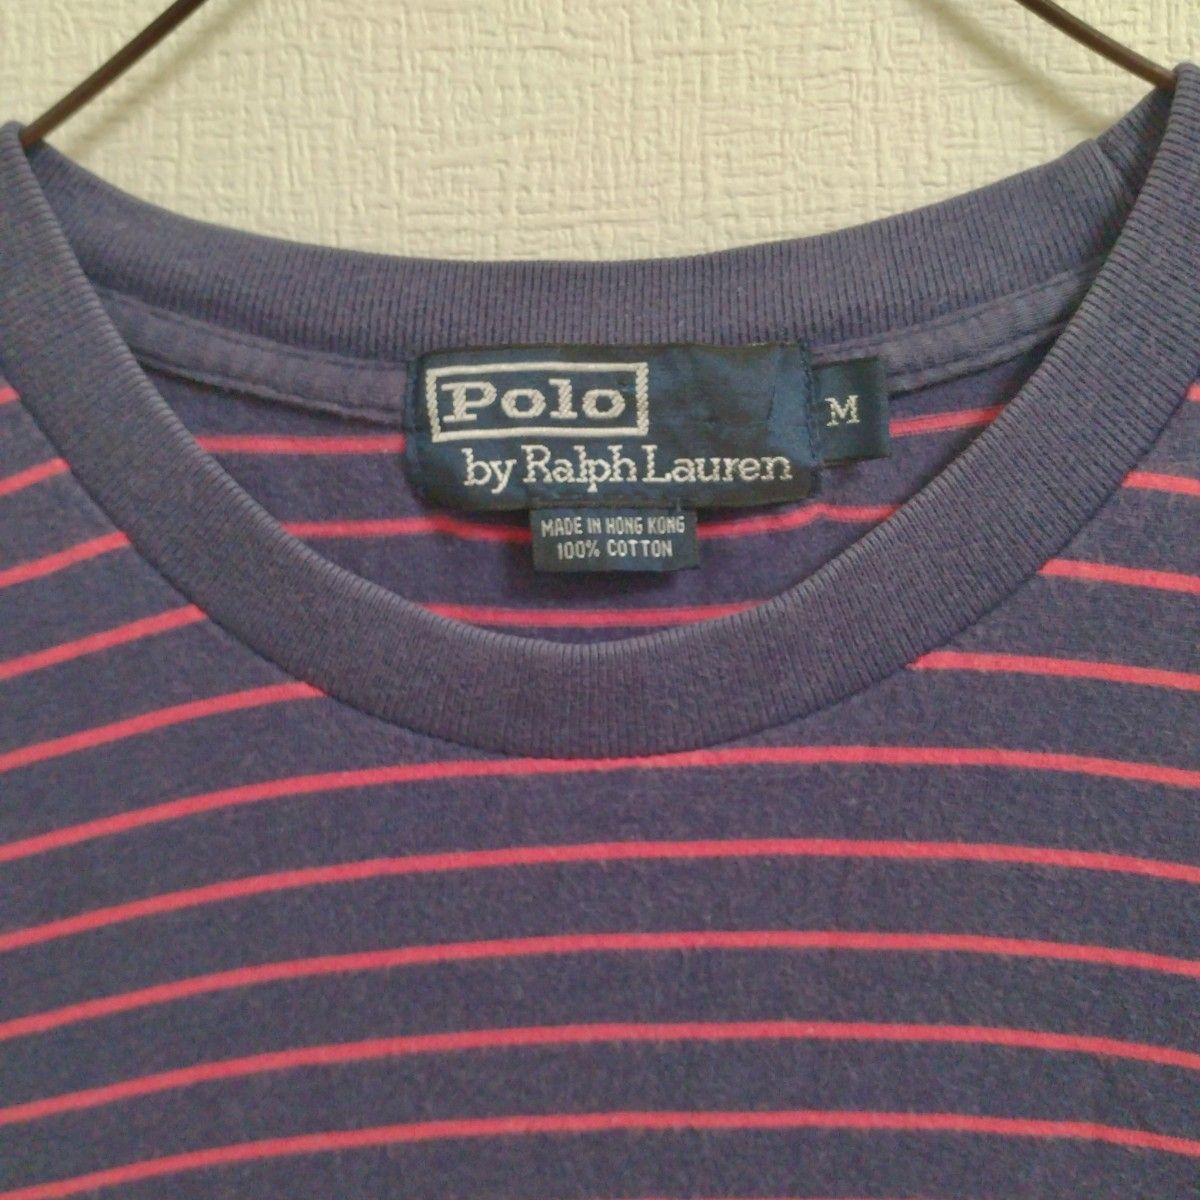 POLO　RALPH LAUREN　90s　ポロラルフローレン ポニーロゴ刺繍  　リンガー　ボーダー　Tシャツ　